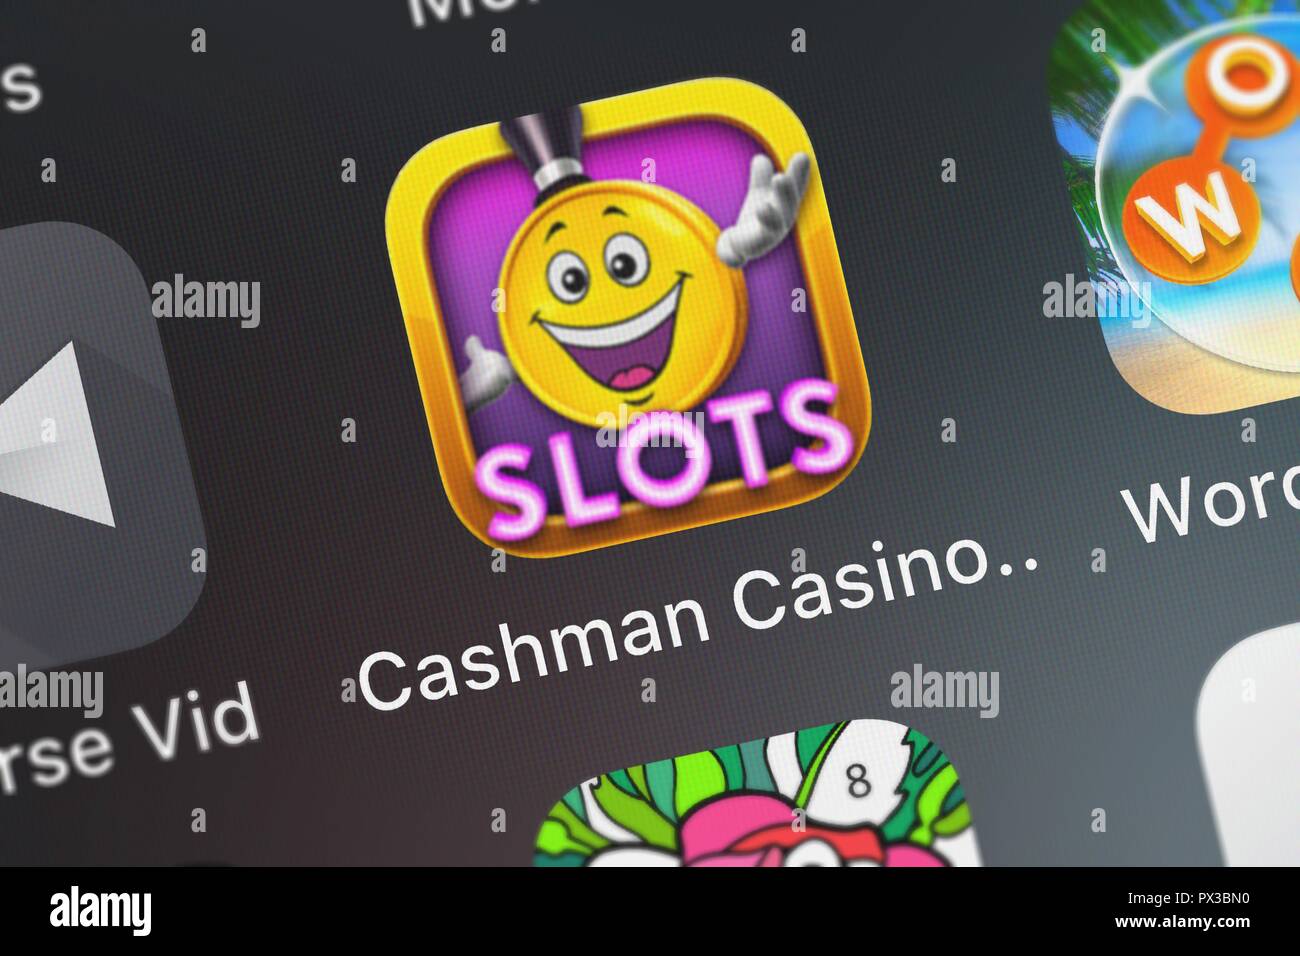 cashman casino not loading